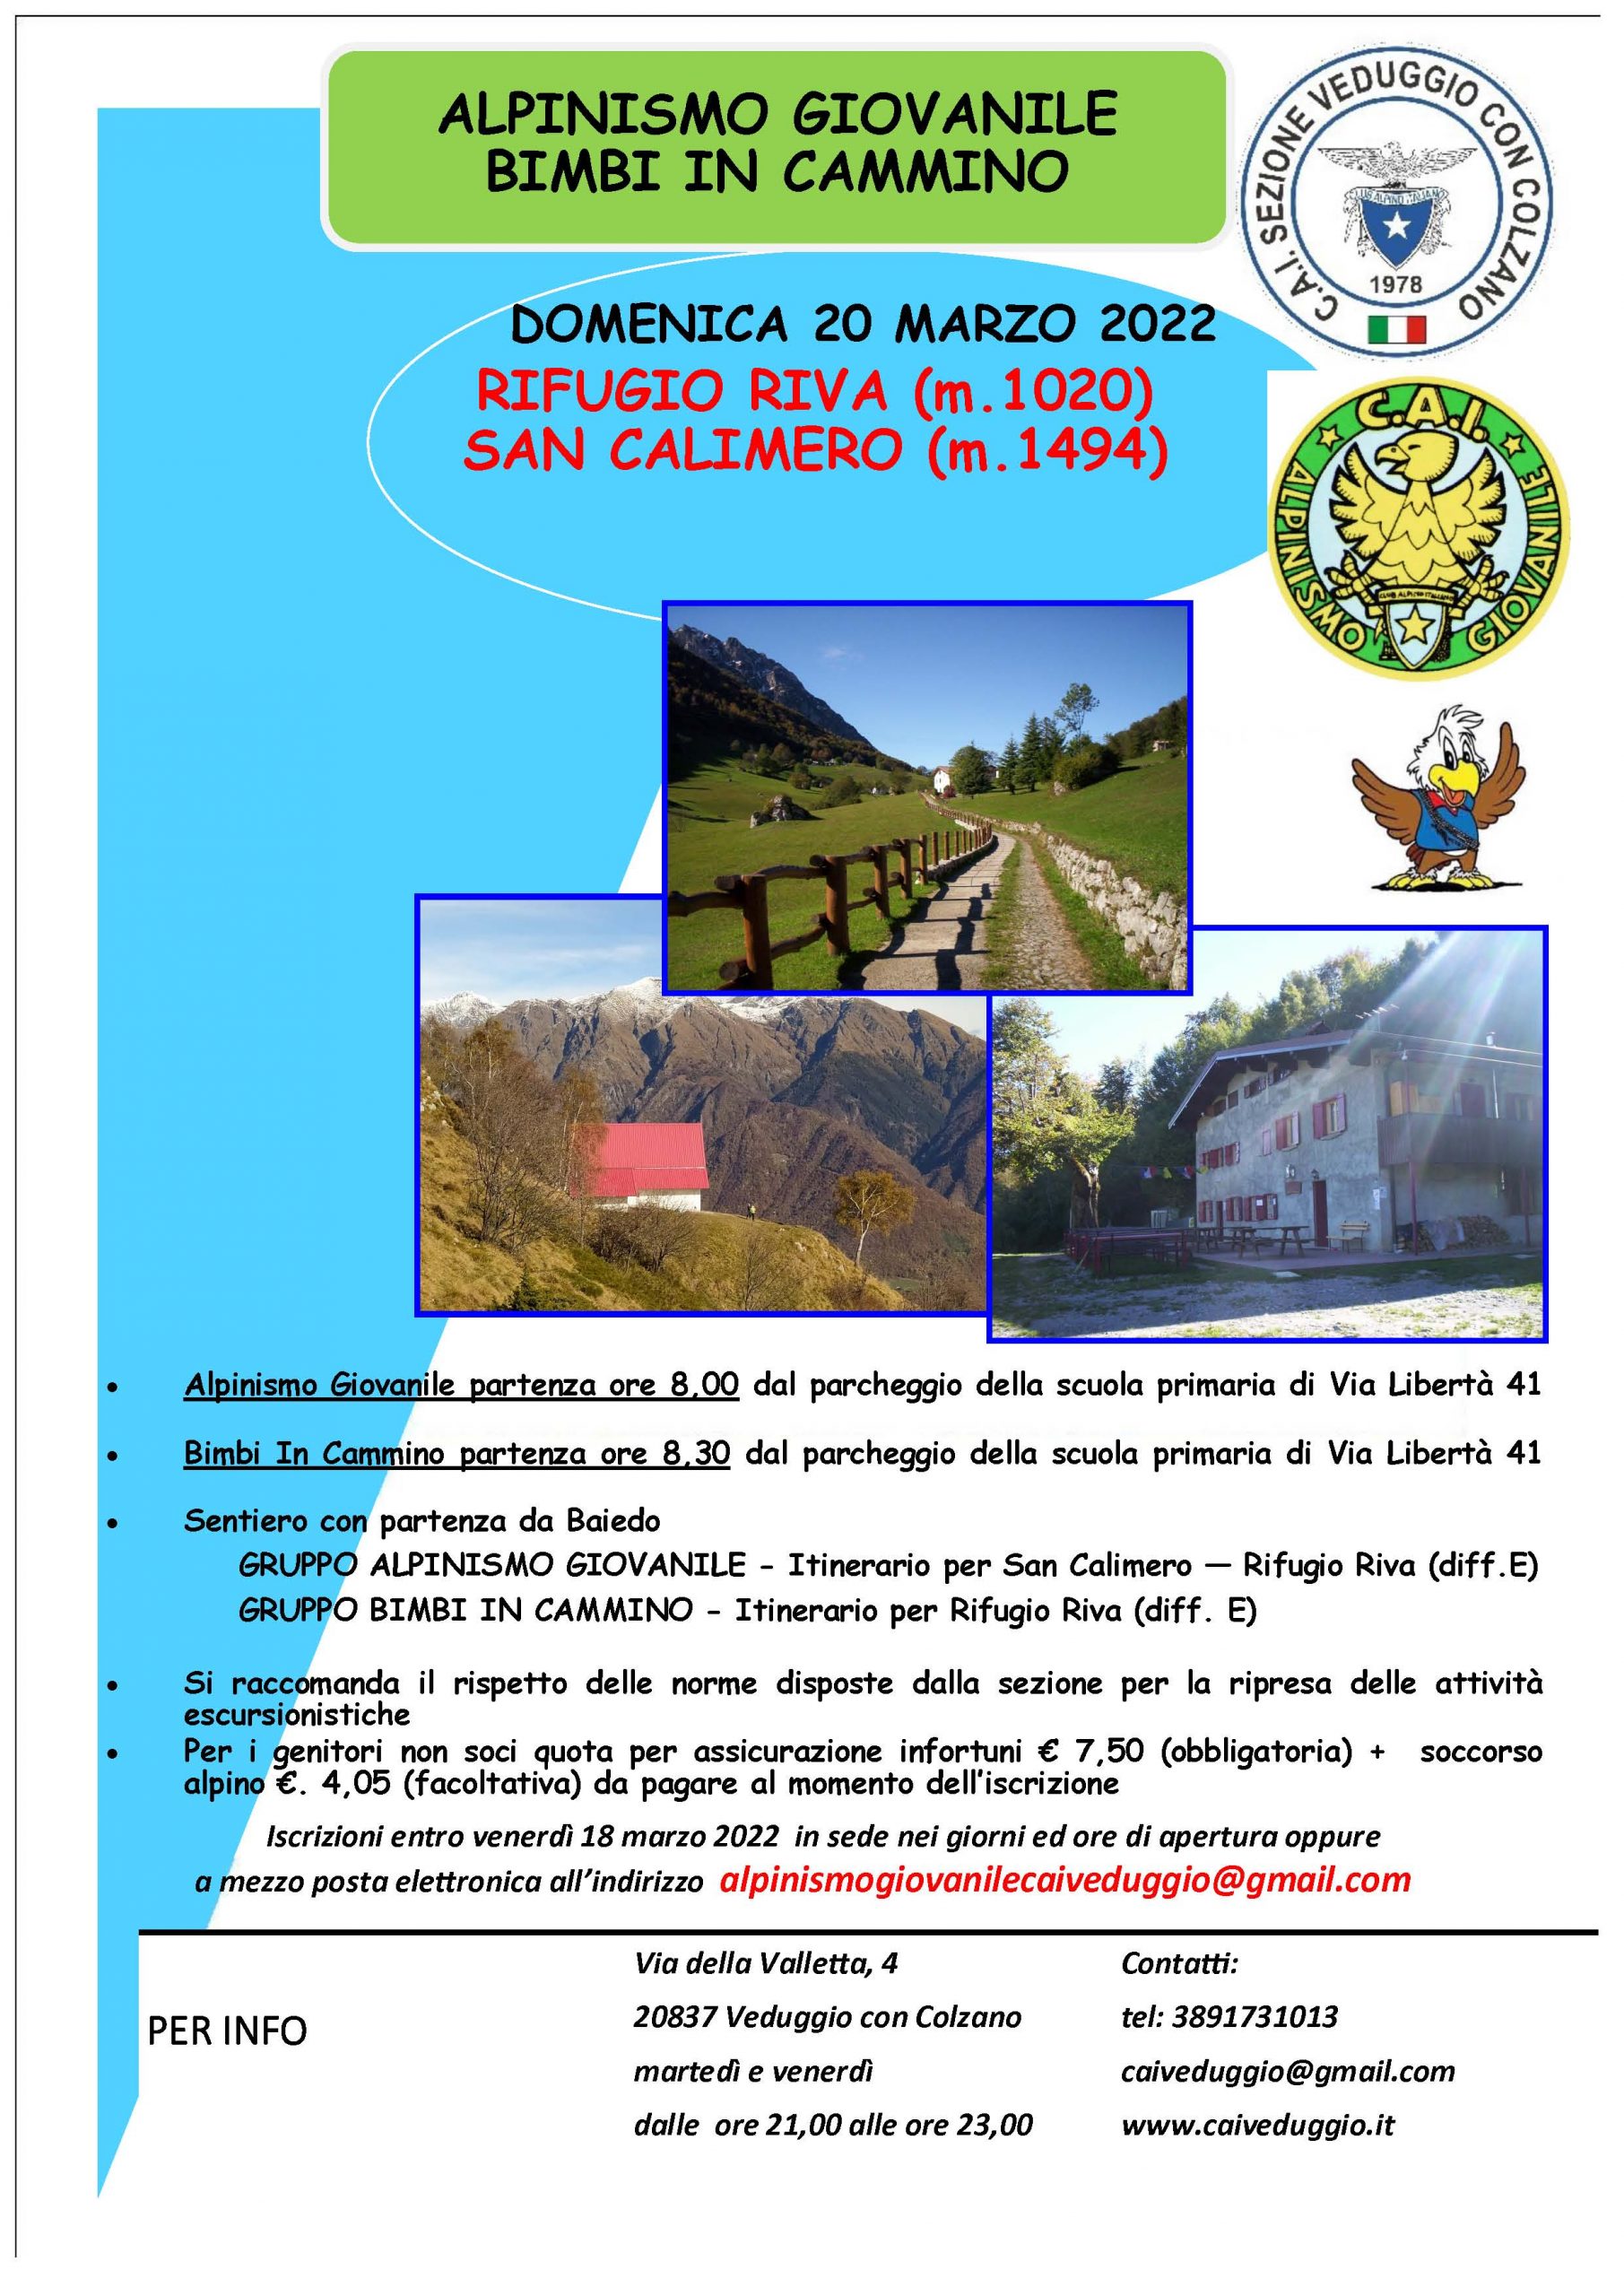 Domenica 20 marzo 2022 – San Calimero/Rifugio Riva – Alpinismo Giovanile e Bimbi in cammino